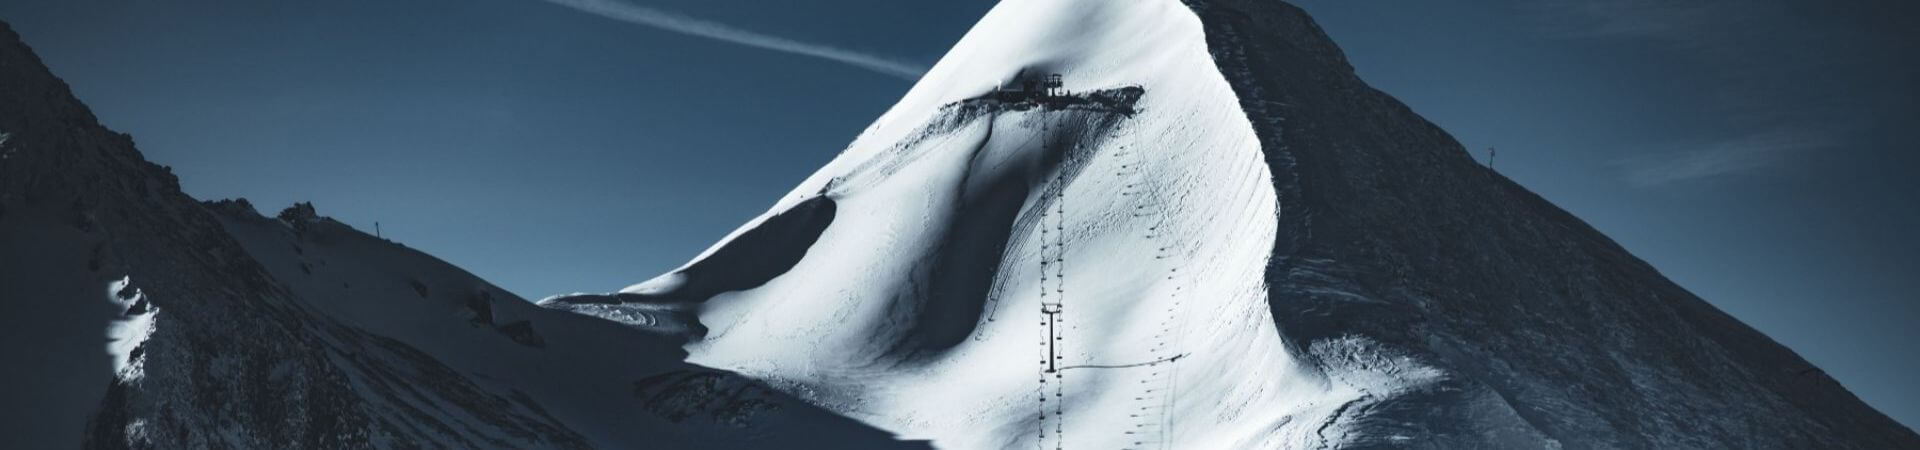 Najbardziej strome trasy narciarskie w Alpach